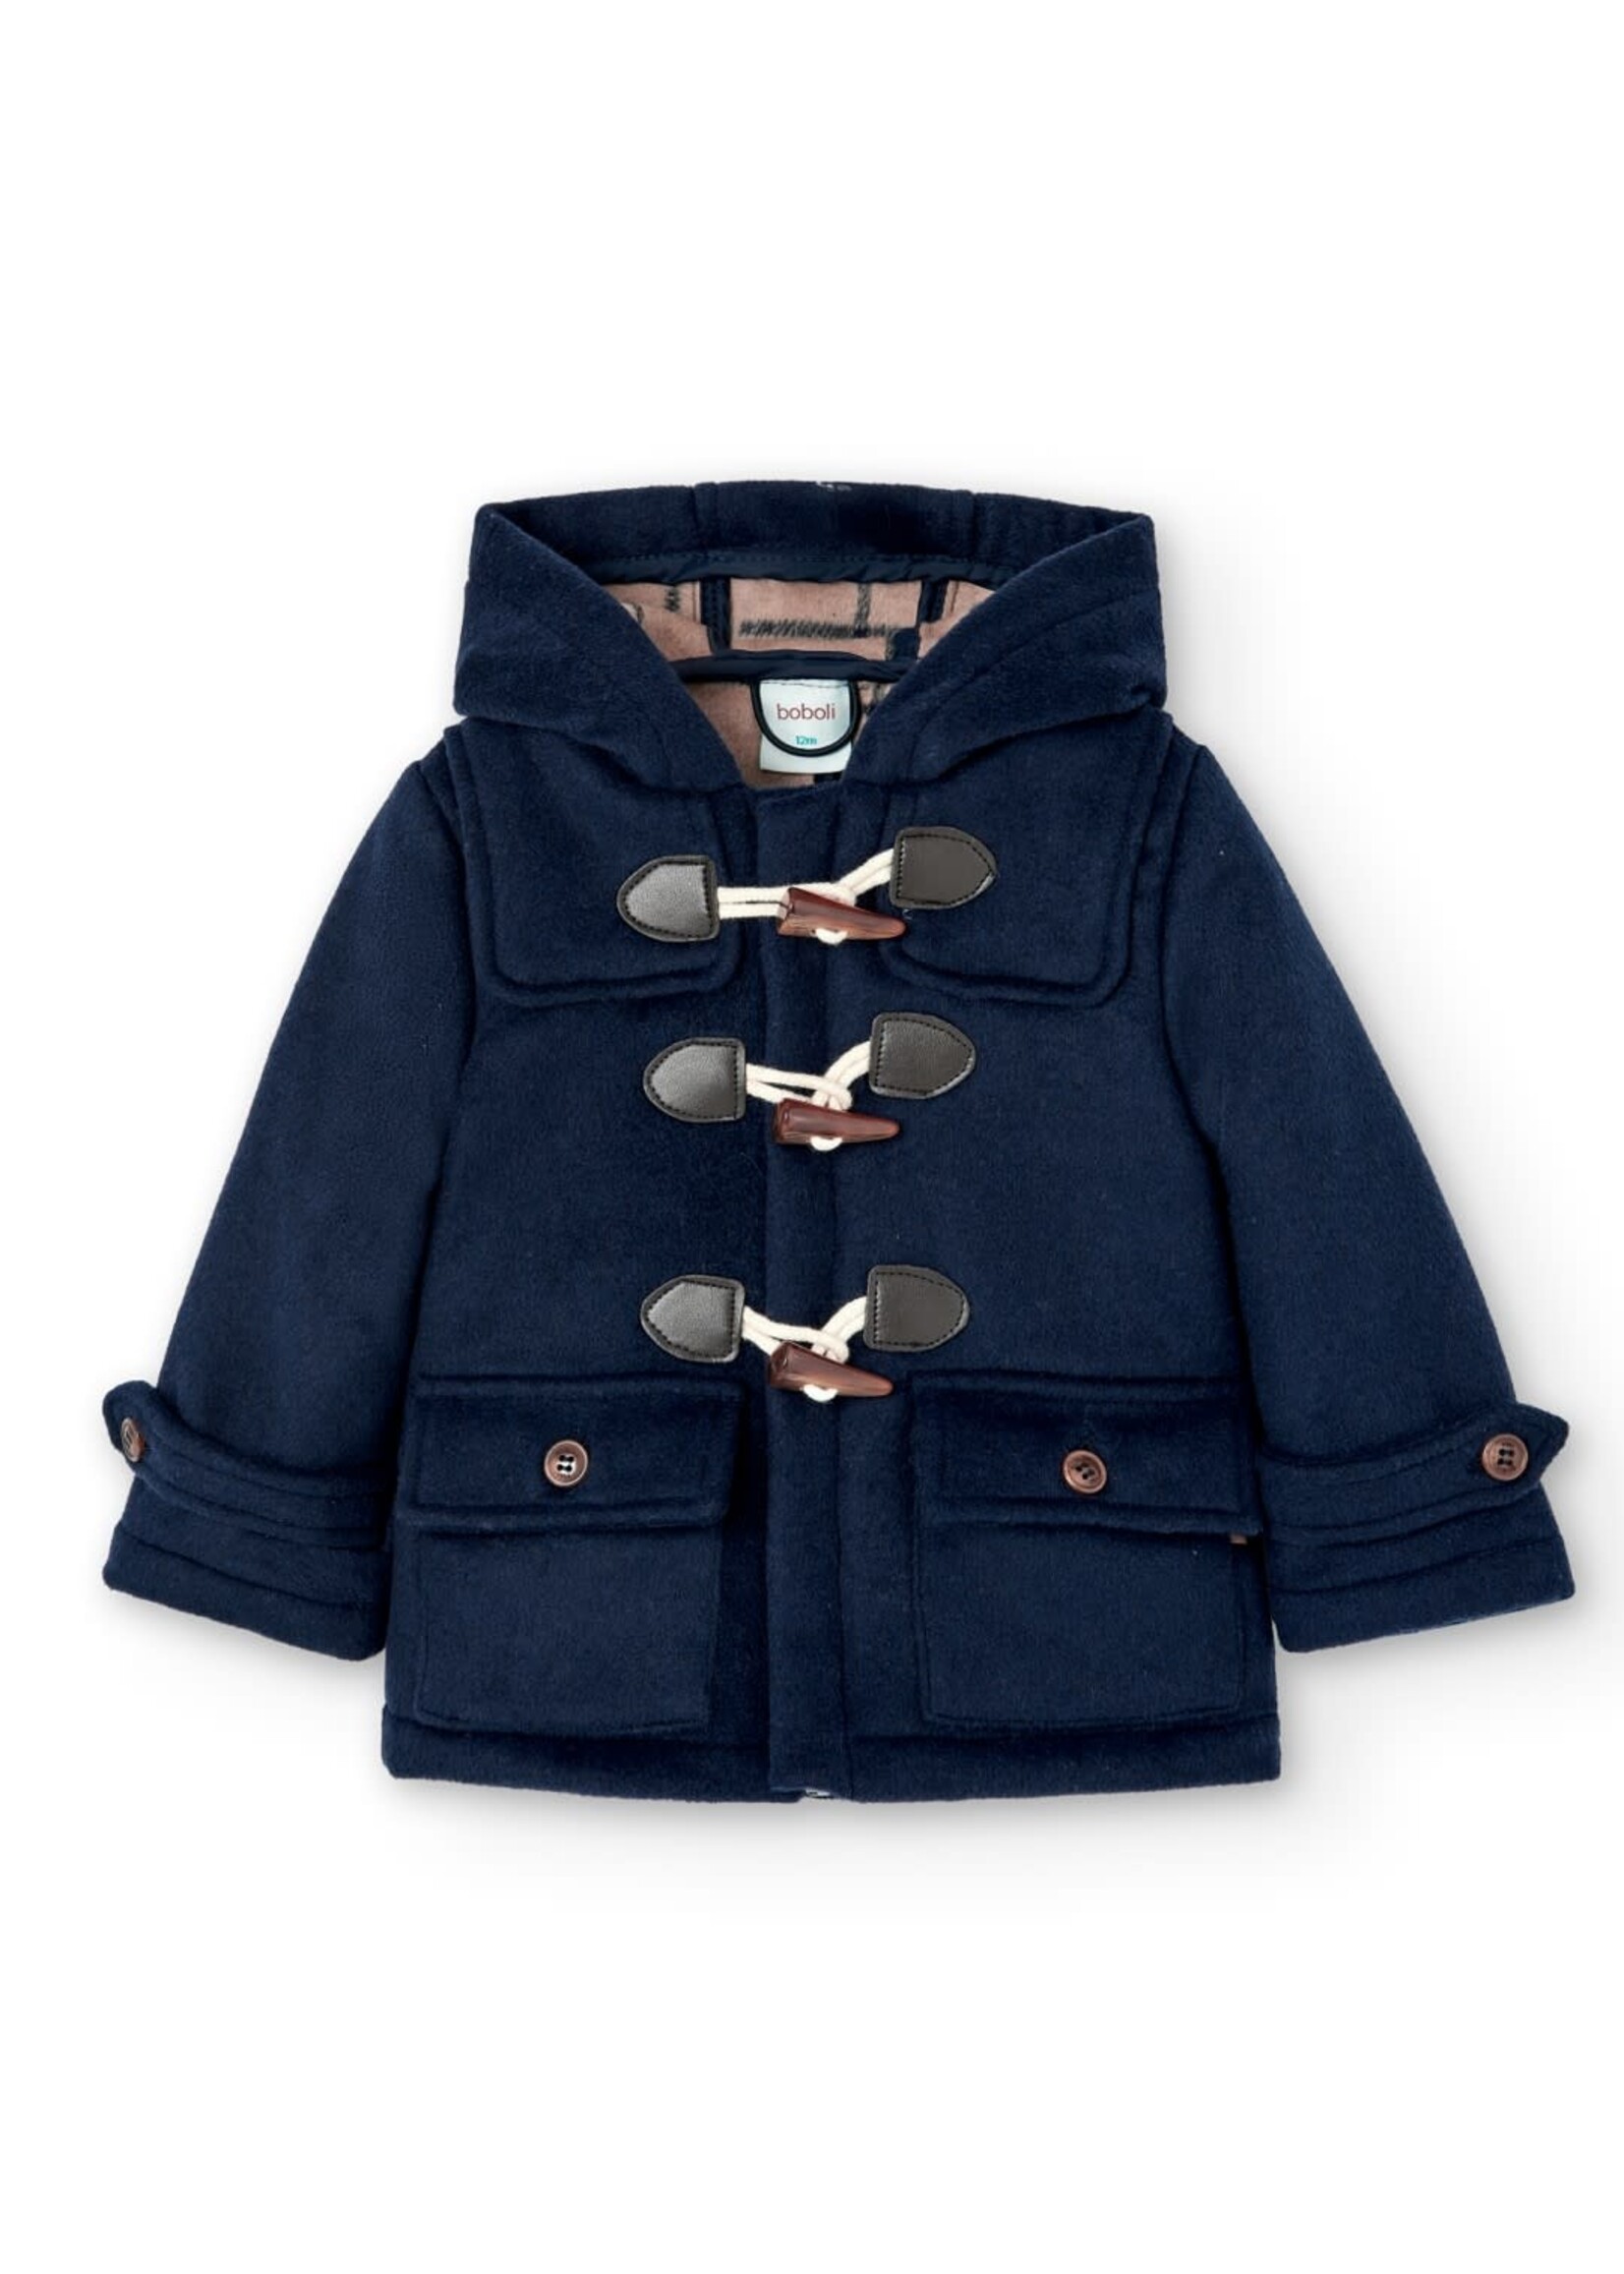 Boboli Cloth jacket for baby boy navy 717263